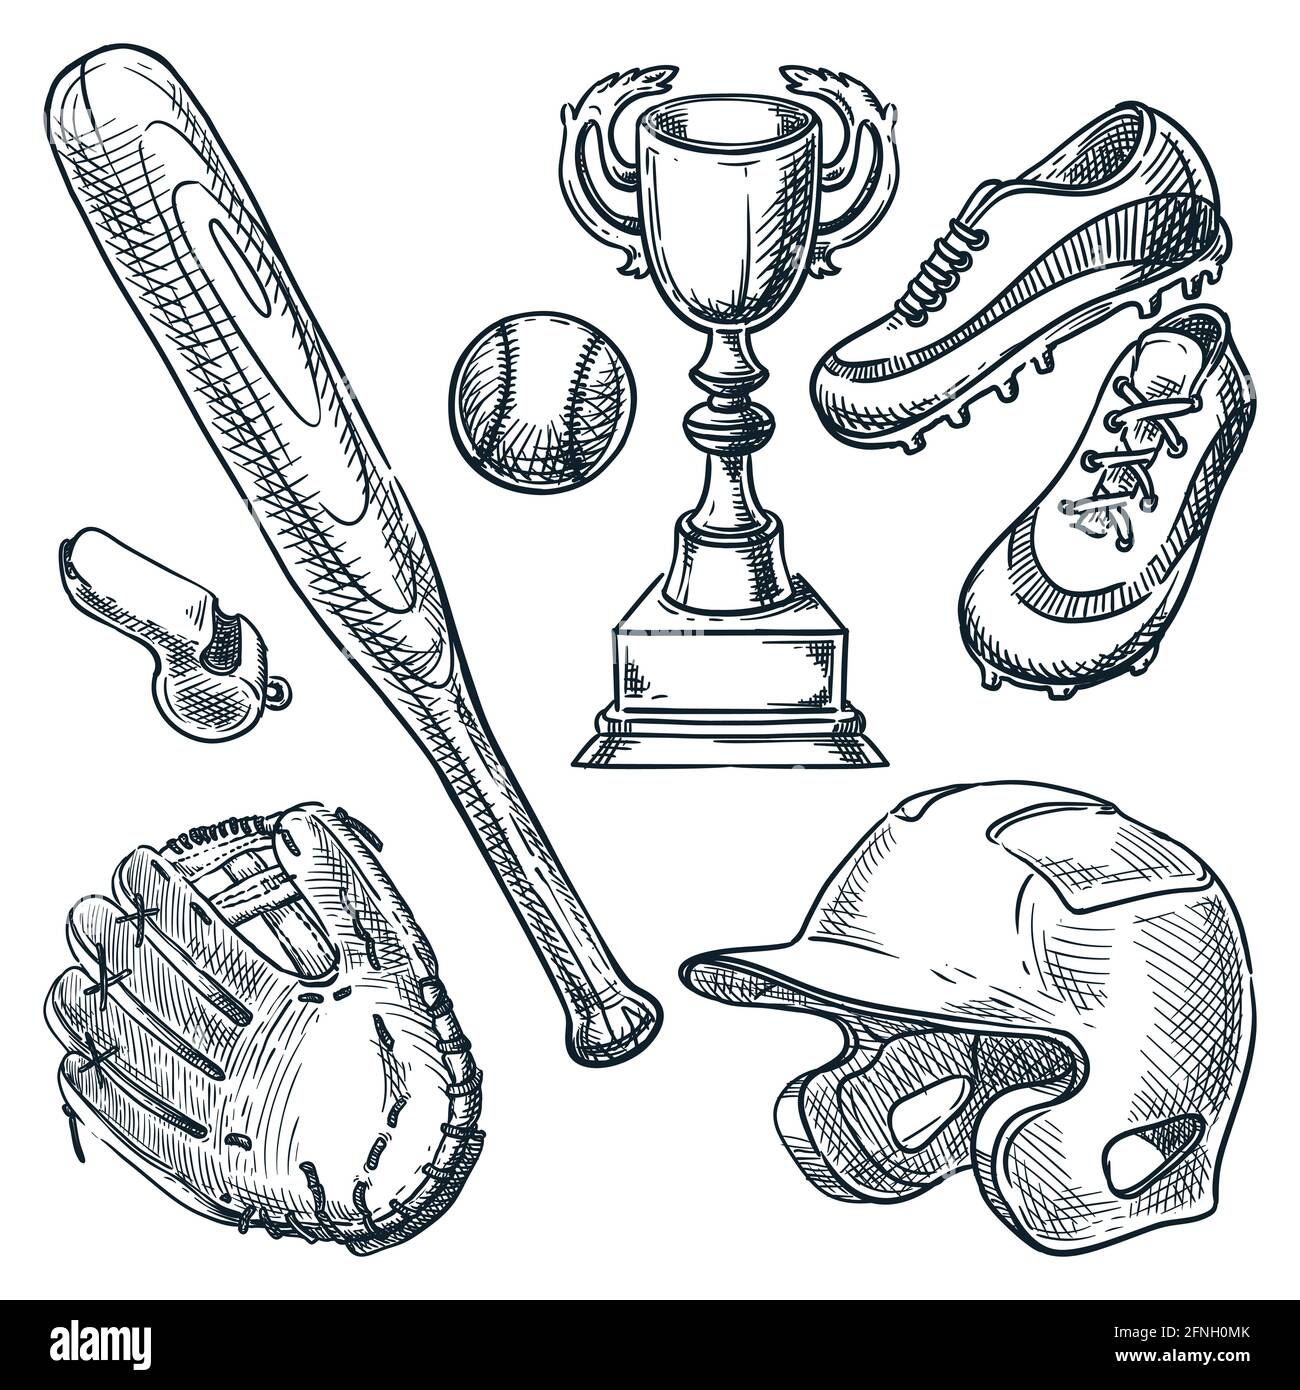 Baseballsportausrüstung. Vektorgrafik mit handgezeichneter Skizze. Ball, Handschuh, Baseballschläger, Helmsymbole auf weißem Hintergrund isoliert Stock Vektor